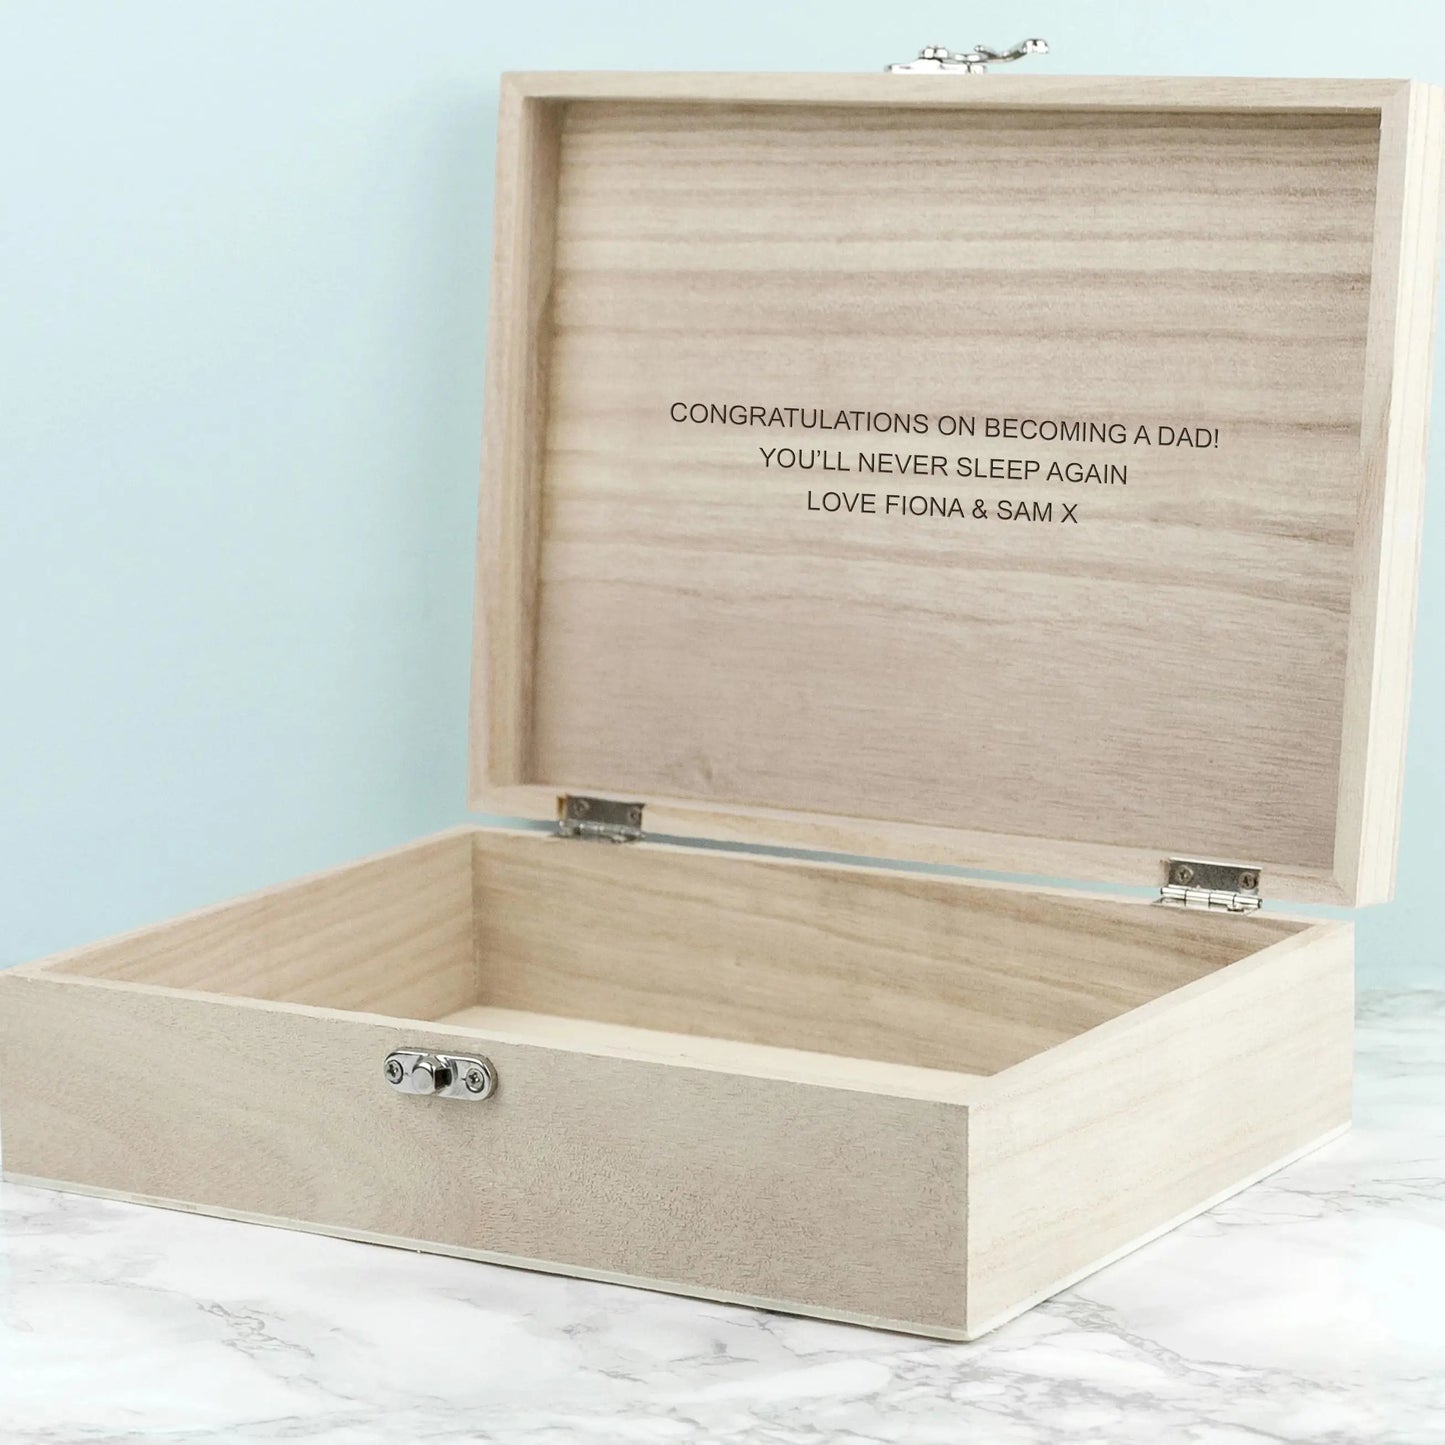 Personalised New Dad Survival Kit Storage Box - Spellbound